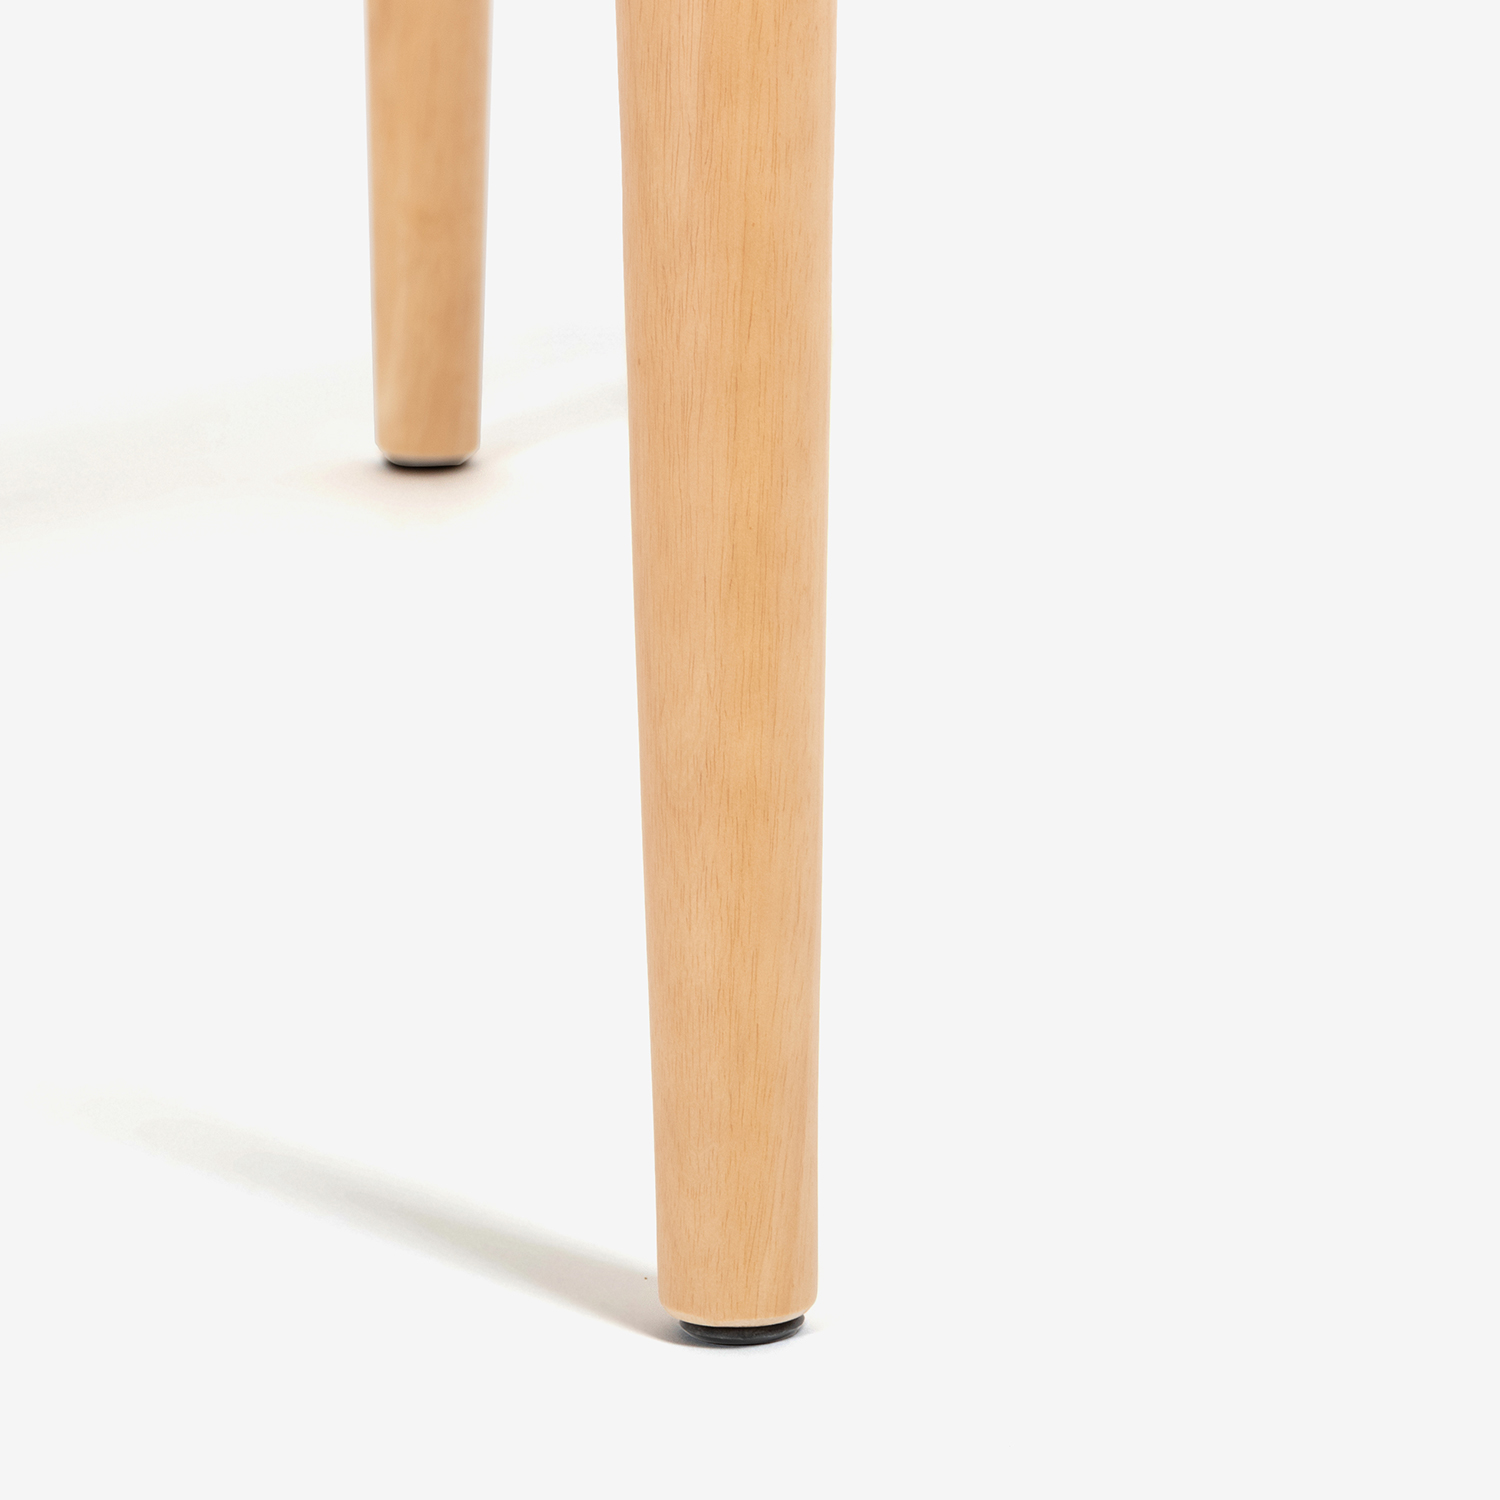 ダイニングテーブル「ユノ3」幅80cm レッドオーク材 ホワイトオーク色 丸脚